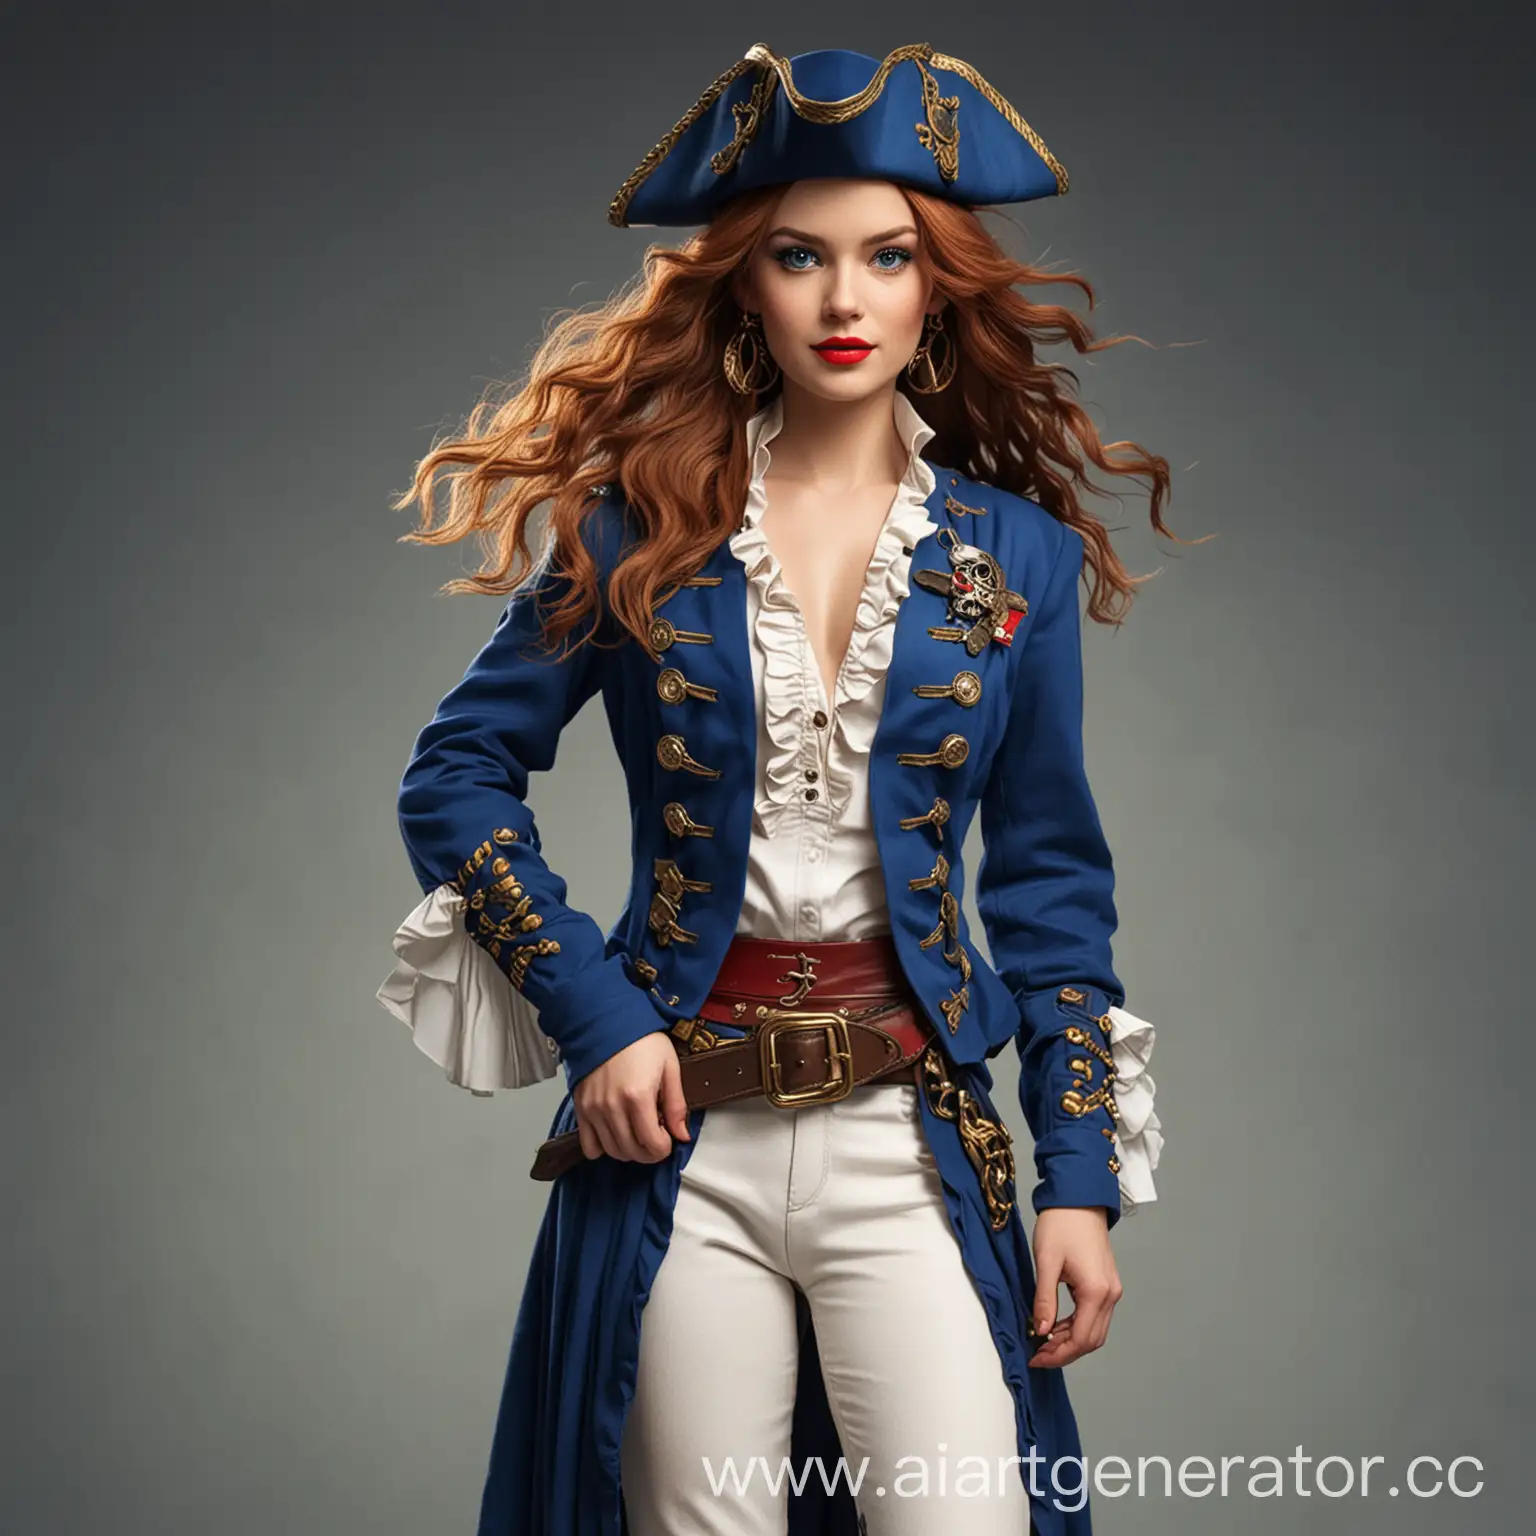 Девушка капитанпиратов, с прямыми русыми волосами, светлой кожей, голубыми глазами, с красными губами, носит золотые серёжки- обручи и одну дополнительную серёжку с голубым сапфиром на правом ухе, носит голубой капитанский жакет, голубую треугольную пиратскую шляпу Джека Воробья, белую рубашку с рюшками на груди, голубые облегающие штаны, высокие коричневые сапоги на каблуке и сабля висит на коричневом поясе, который закреплён на бёдрах.
